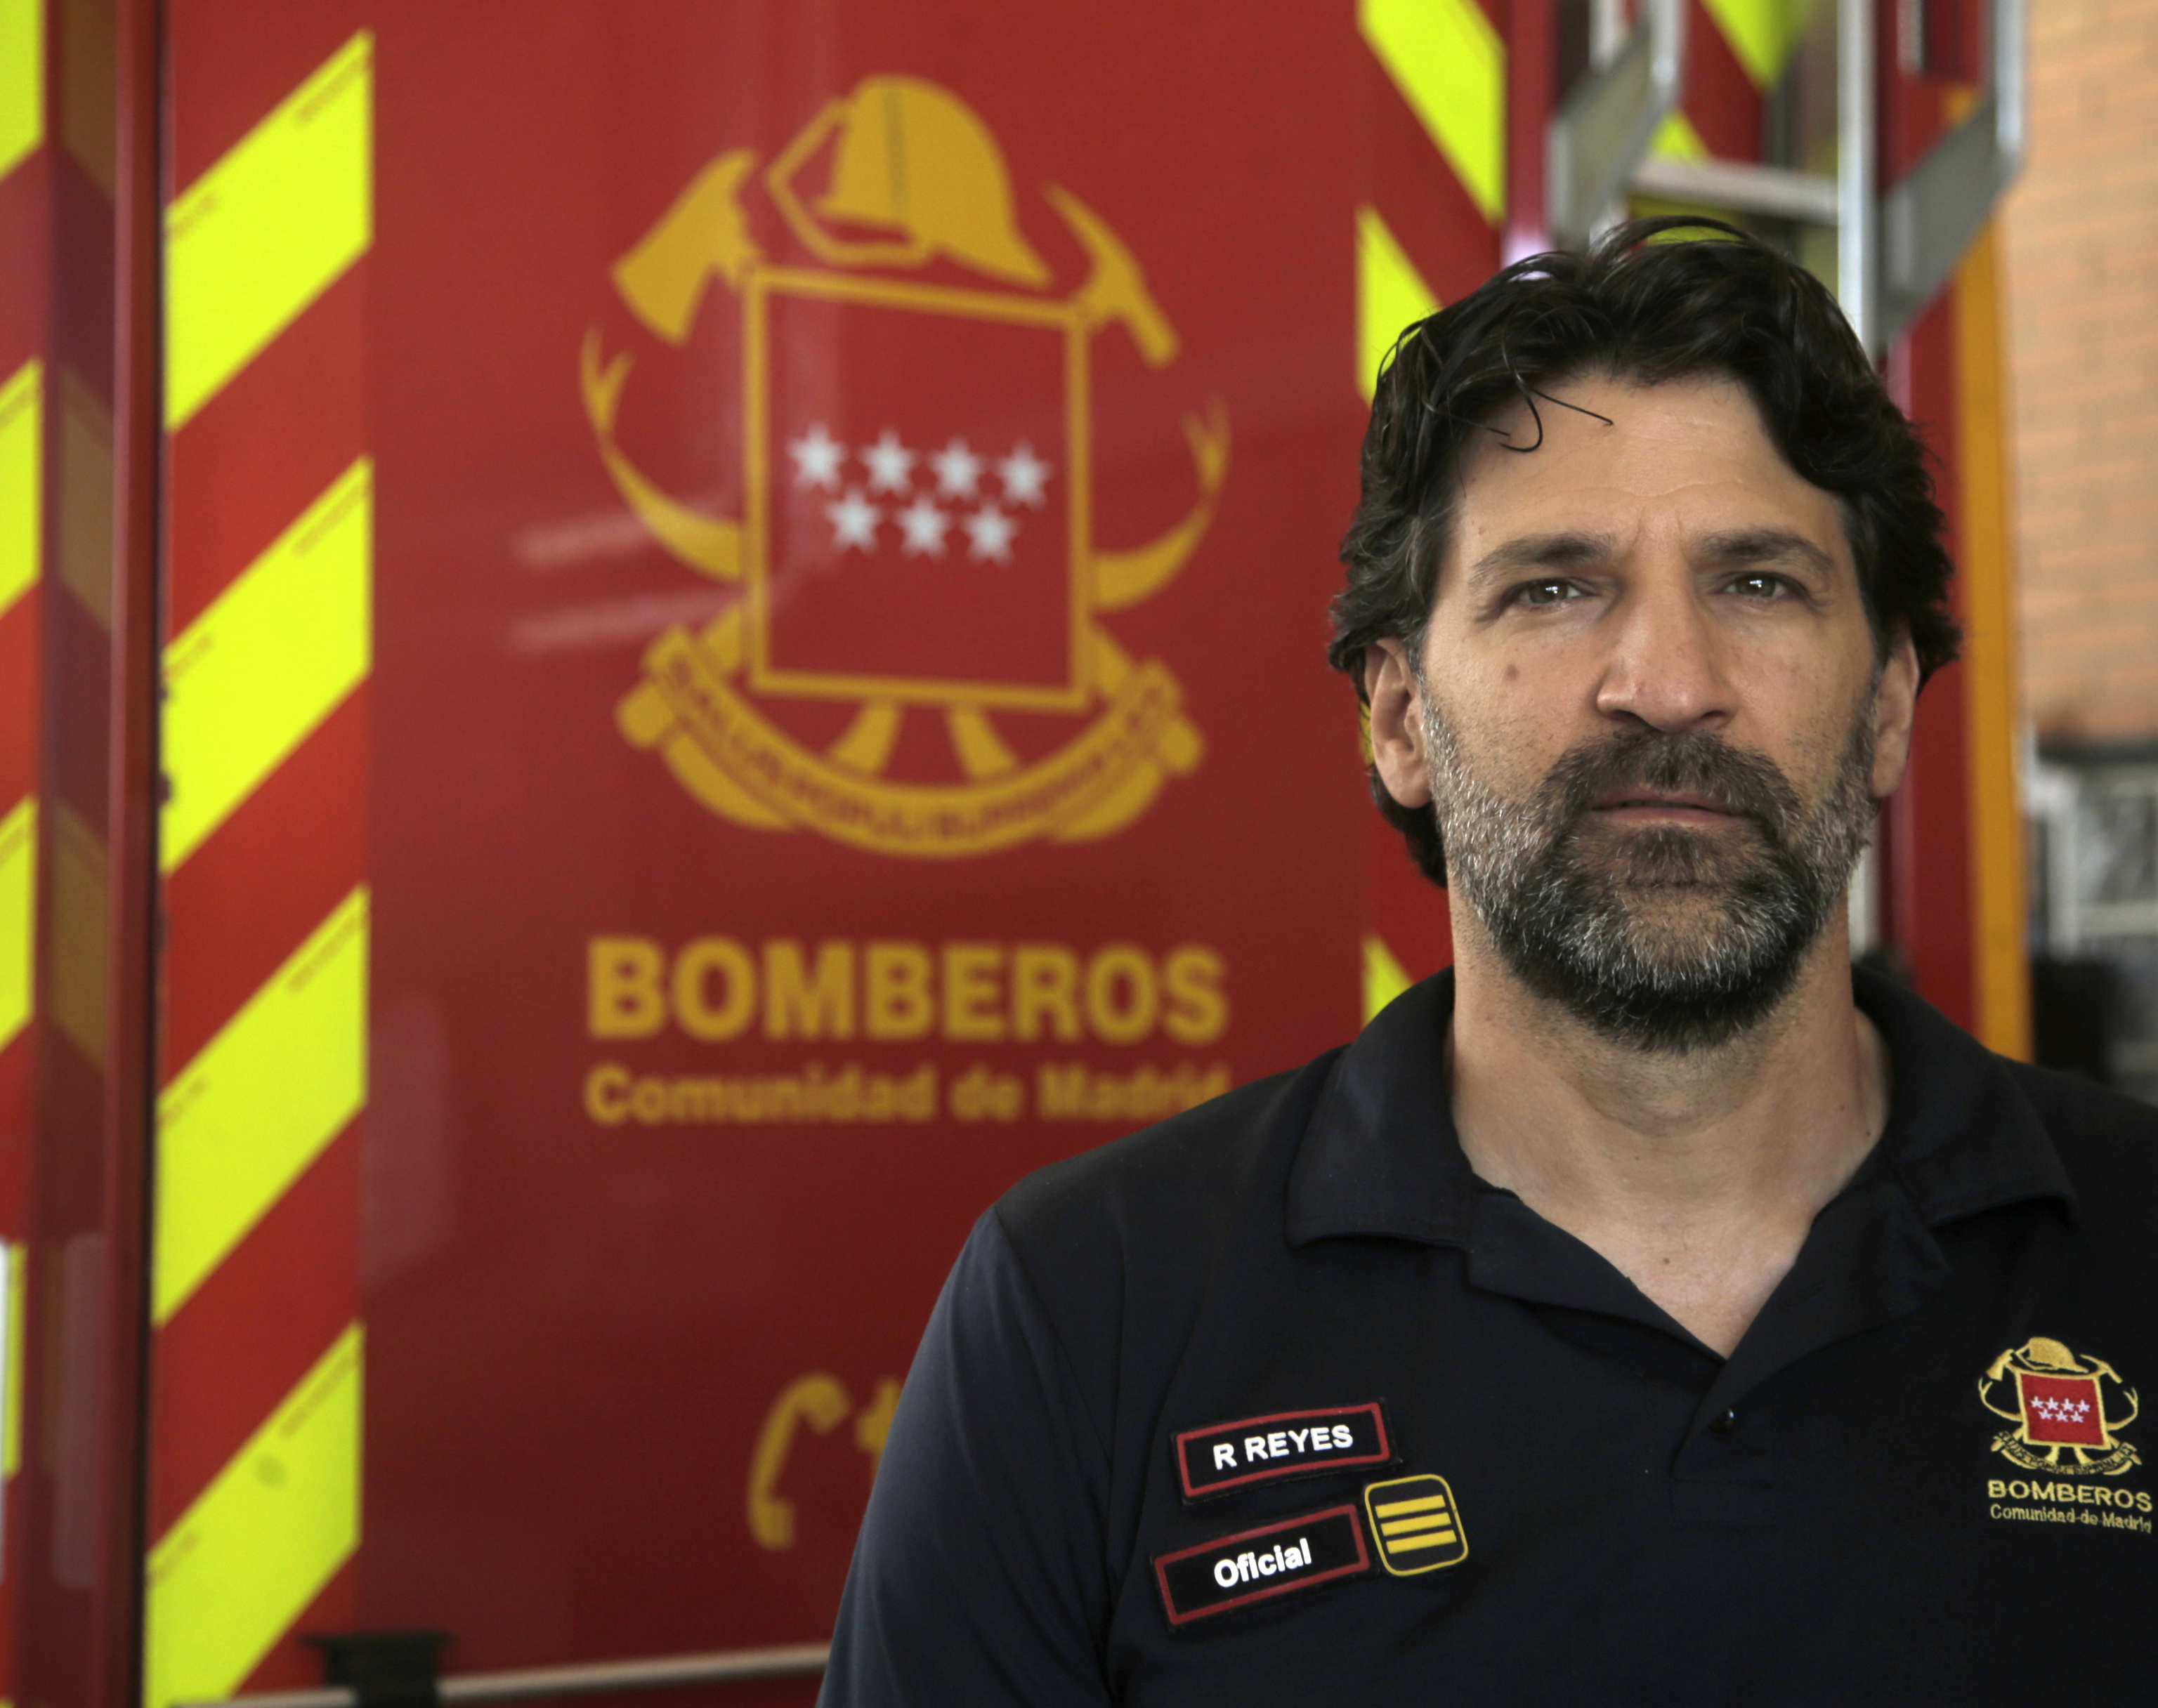 Rafael Reyes, oficial de bomberos de la Comunidad de Madrid.